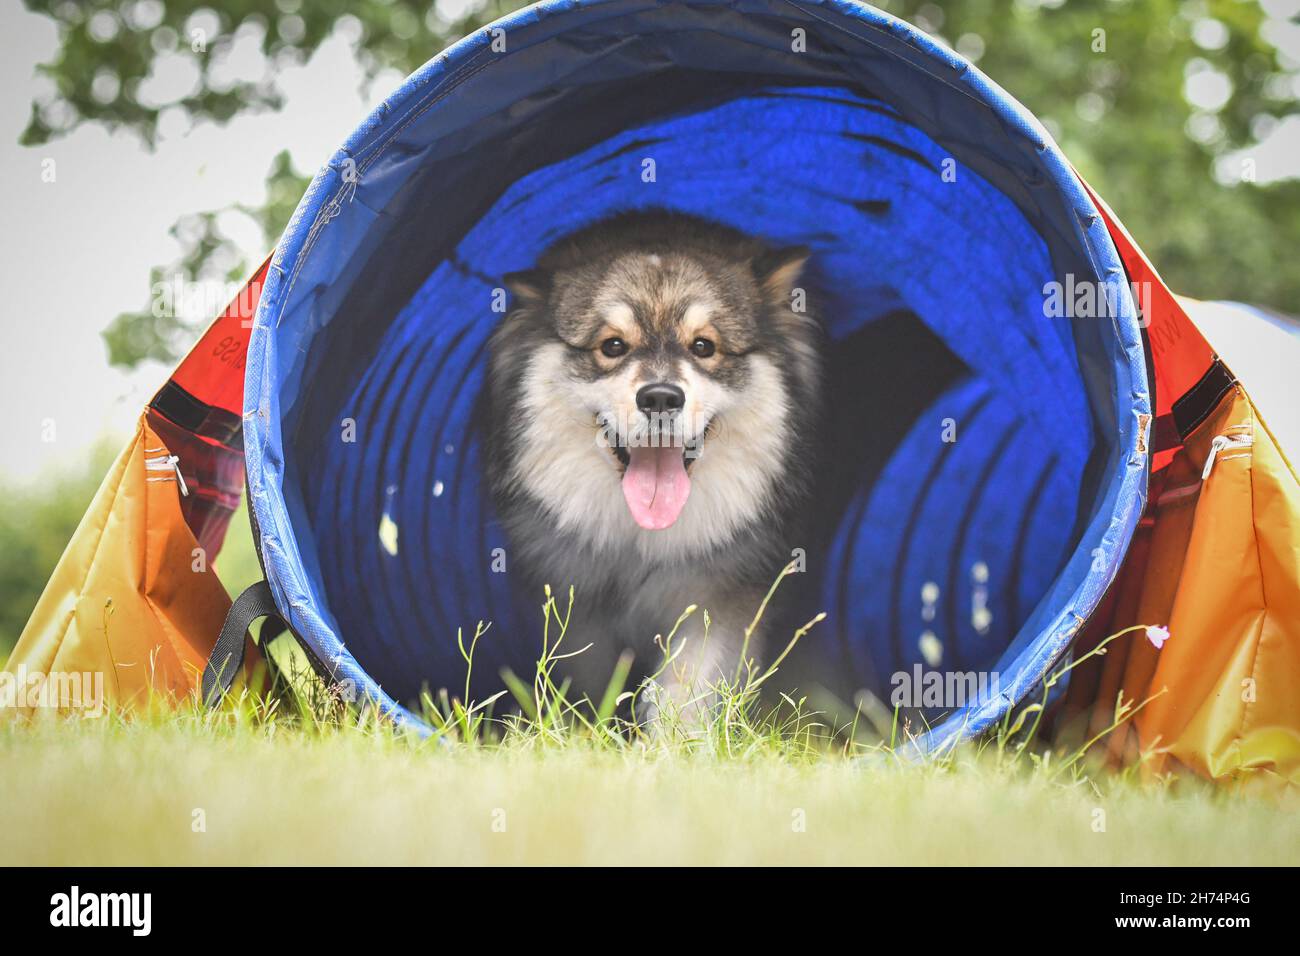 Foto eines finnischen Lapphunds, der im Agility-Kurs aus einem blauen Tunnel kommt und im Freien trainiert Stockfoto